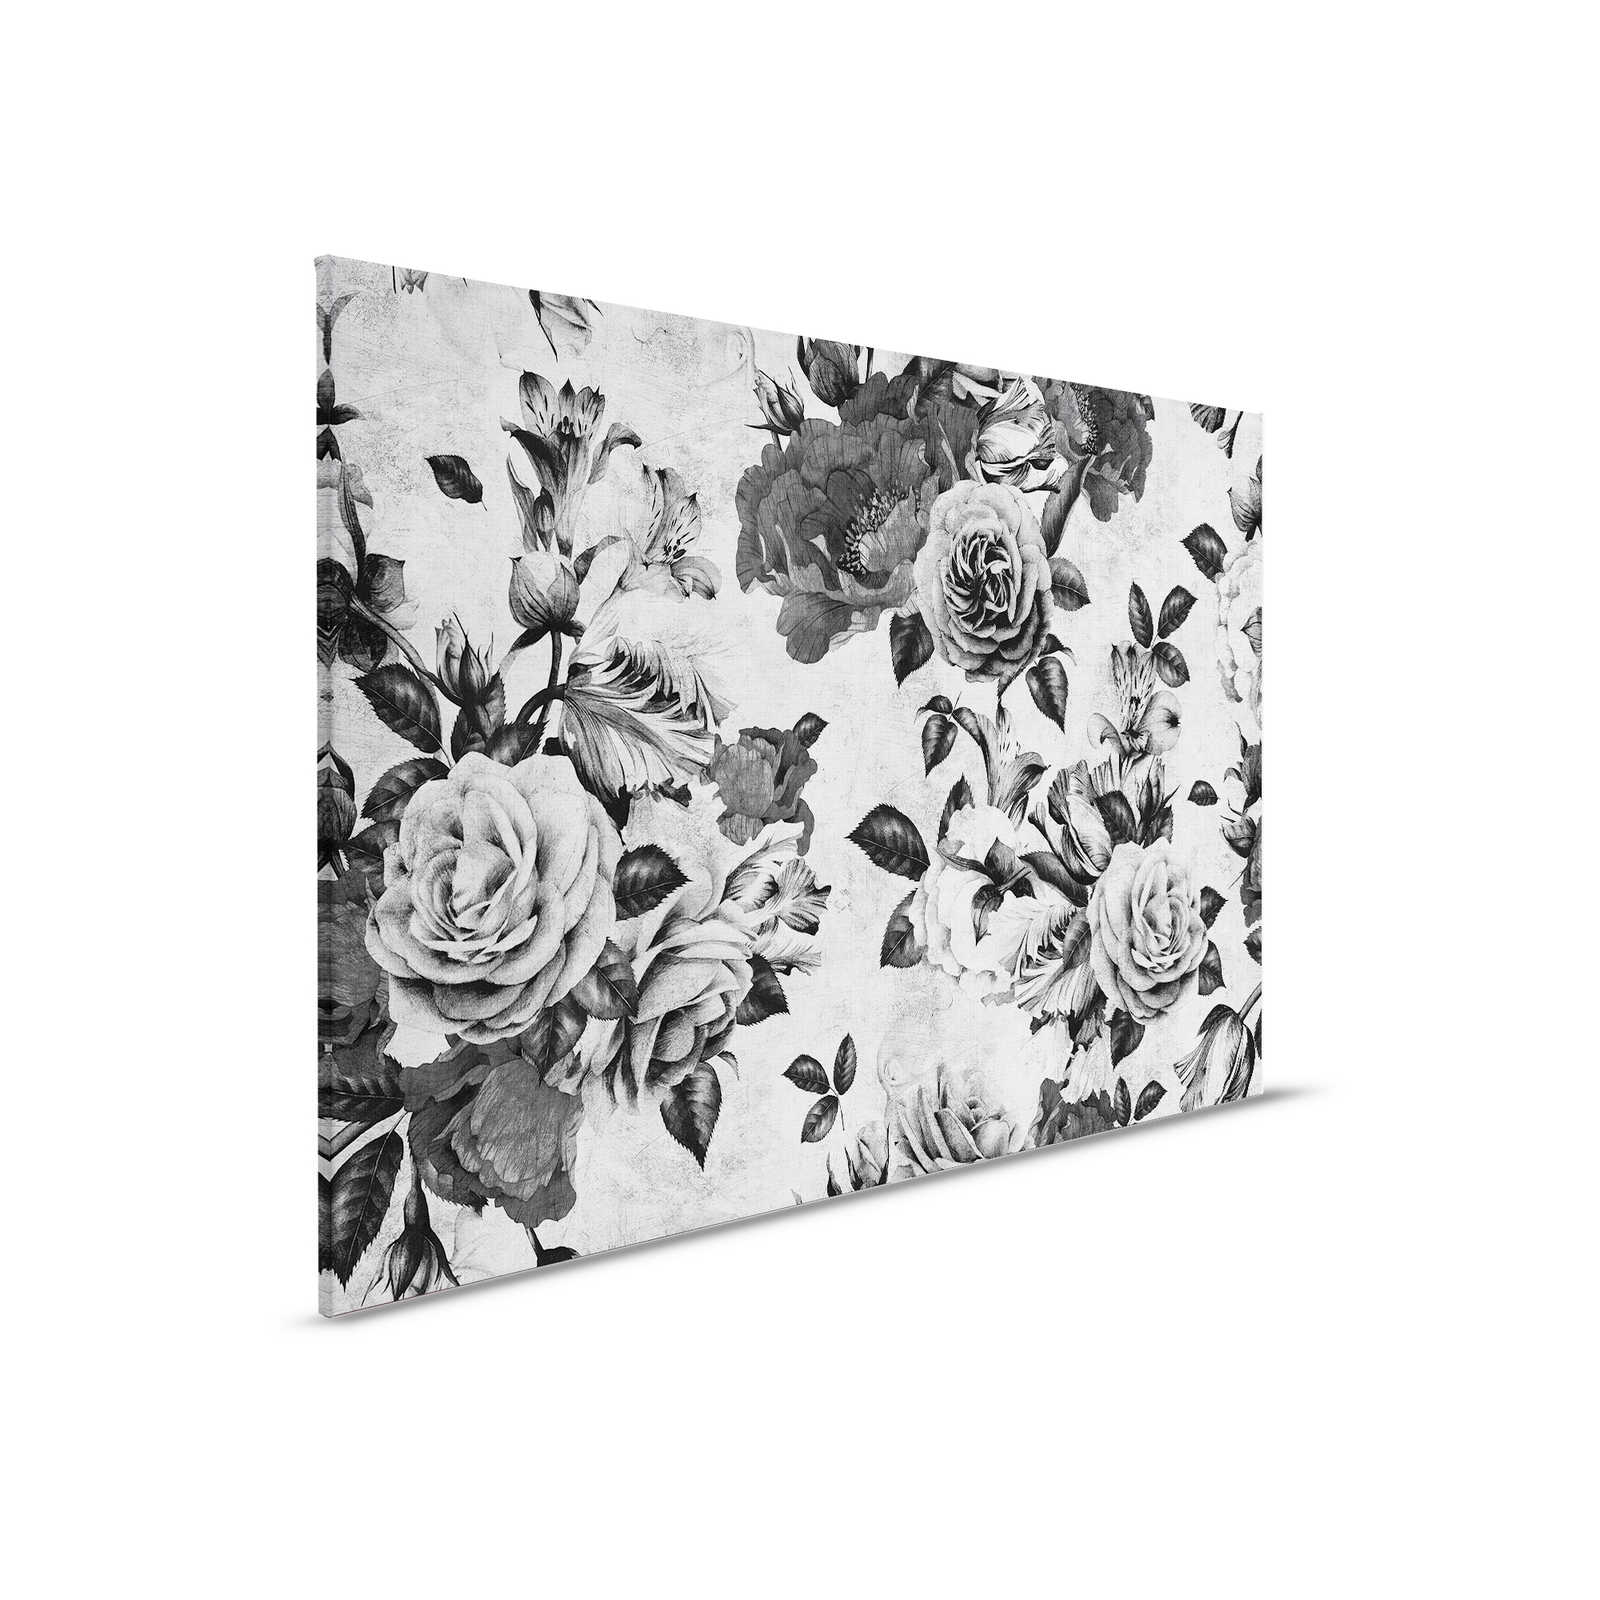 Spanish rose 1 - Rosen Leinwandbild mit Schwarz-Weiß Blüten – 0,90 m x 0,60 m
